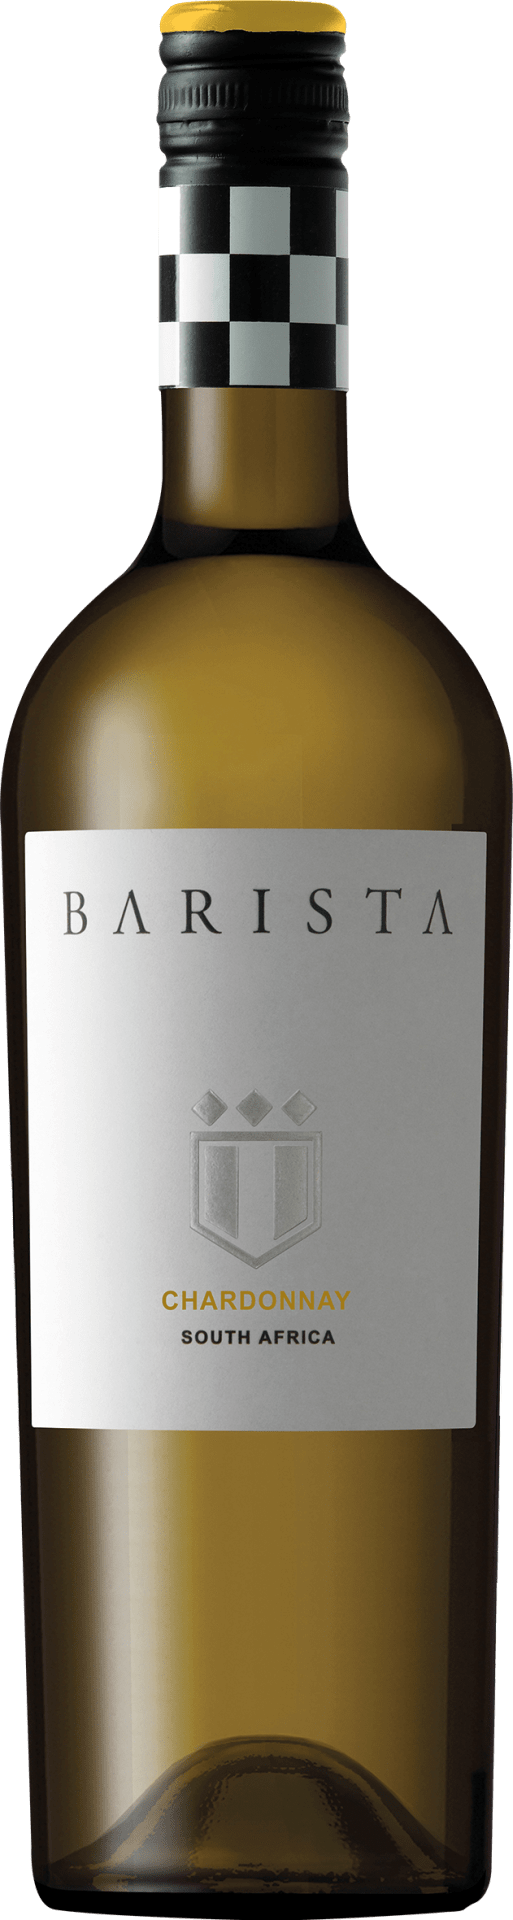 Barista Chardonnay 